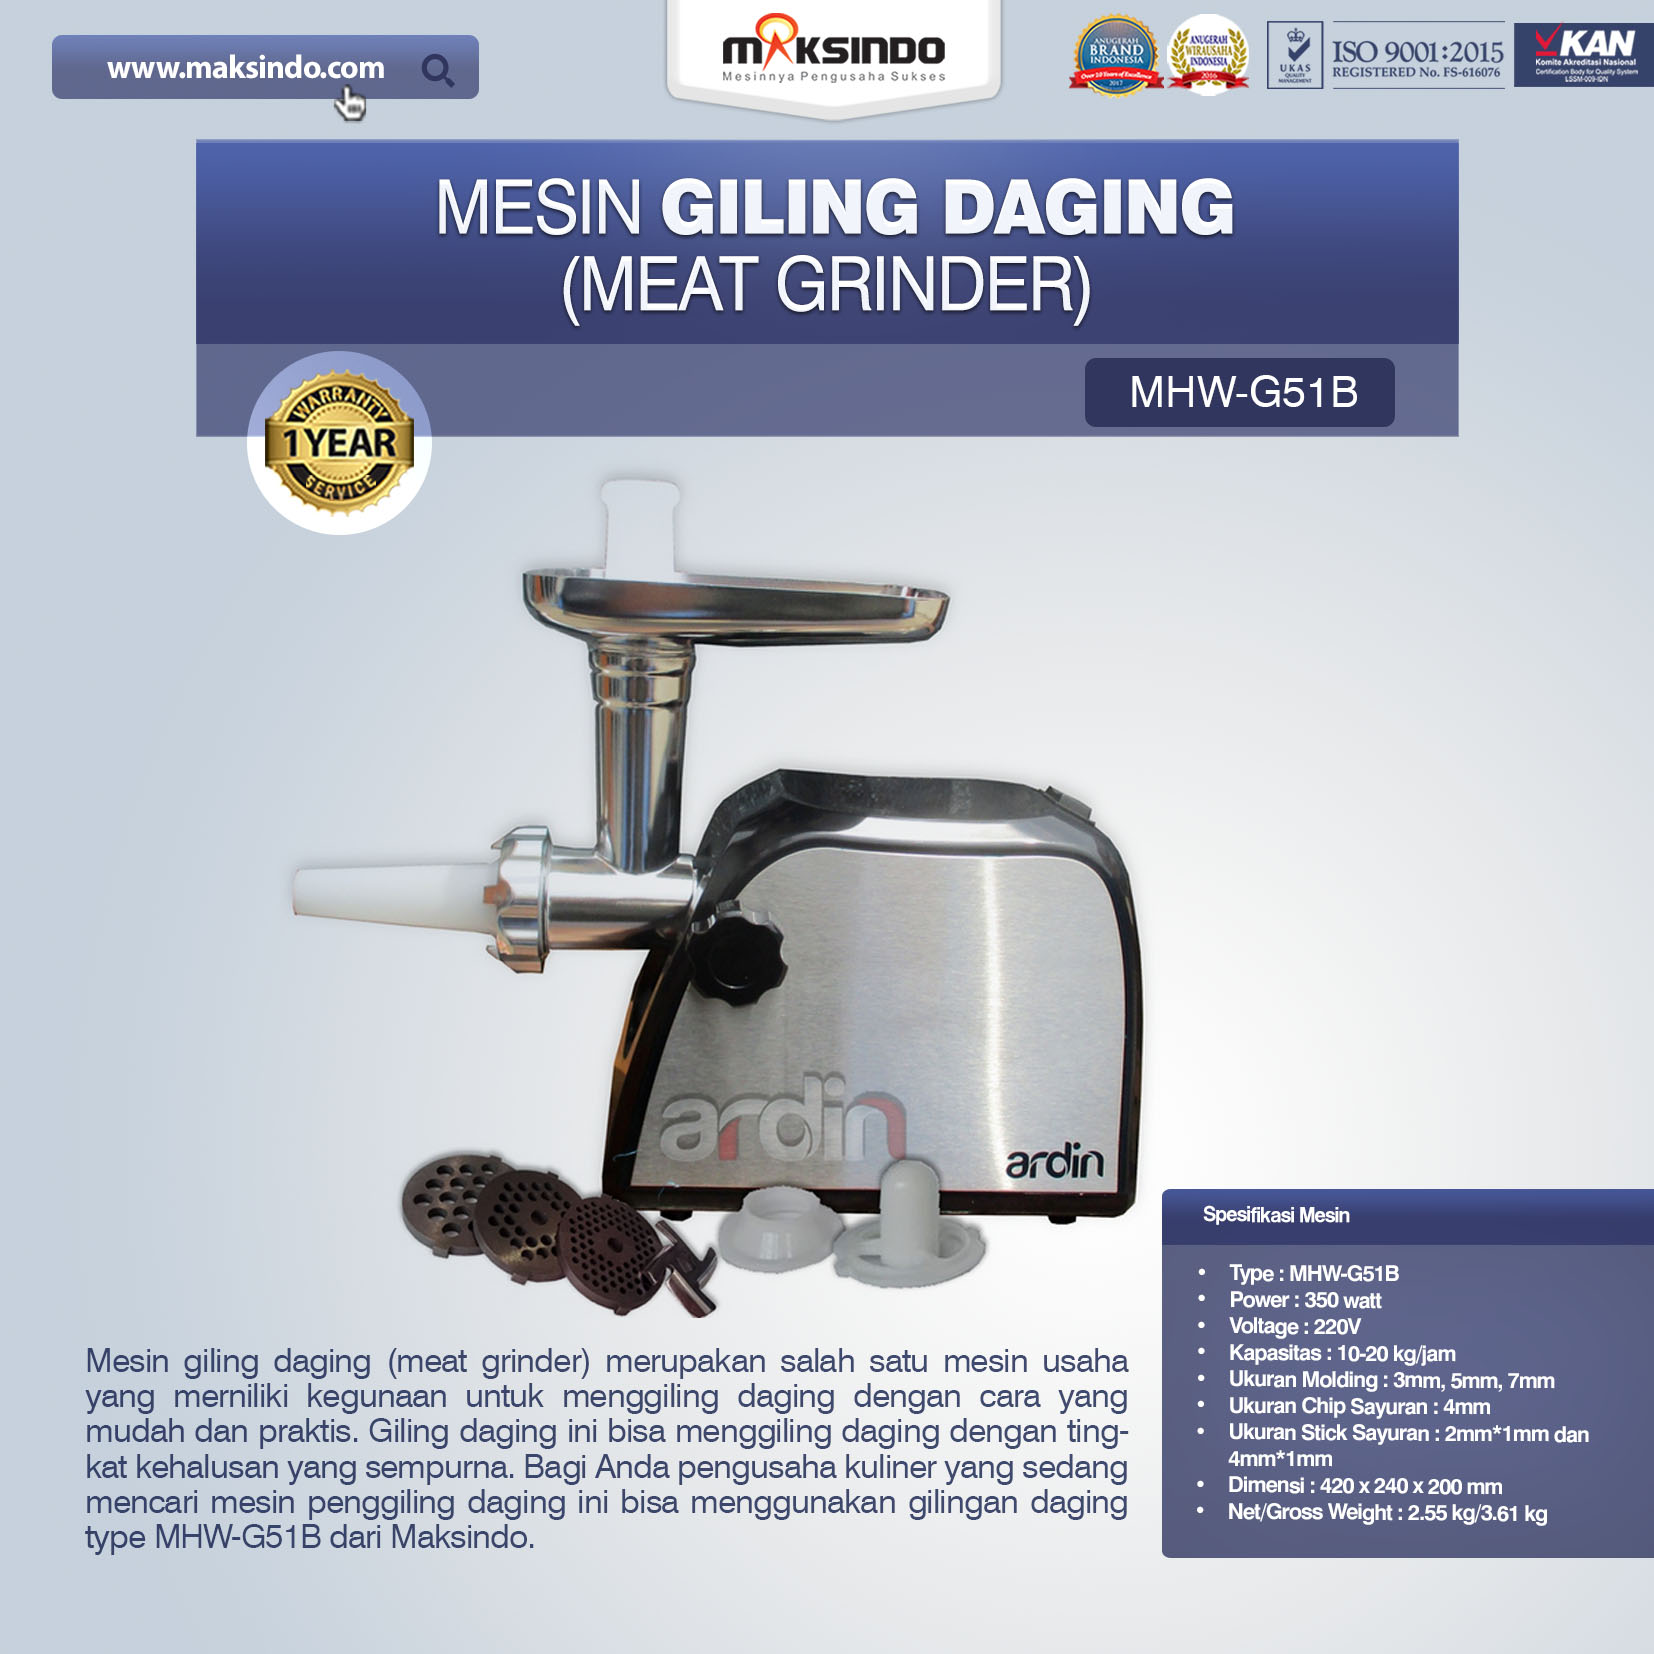 Jual Mesin Giling Daging (Meat Grinder) MHW-G51B di Palembang